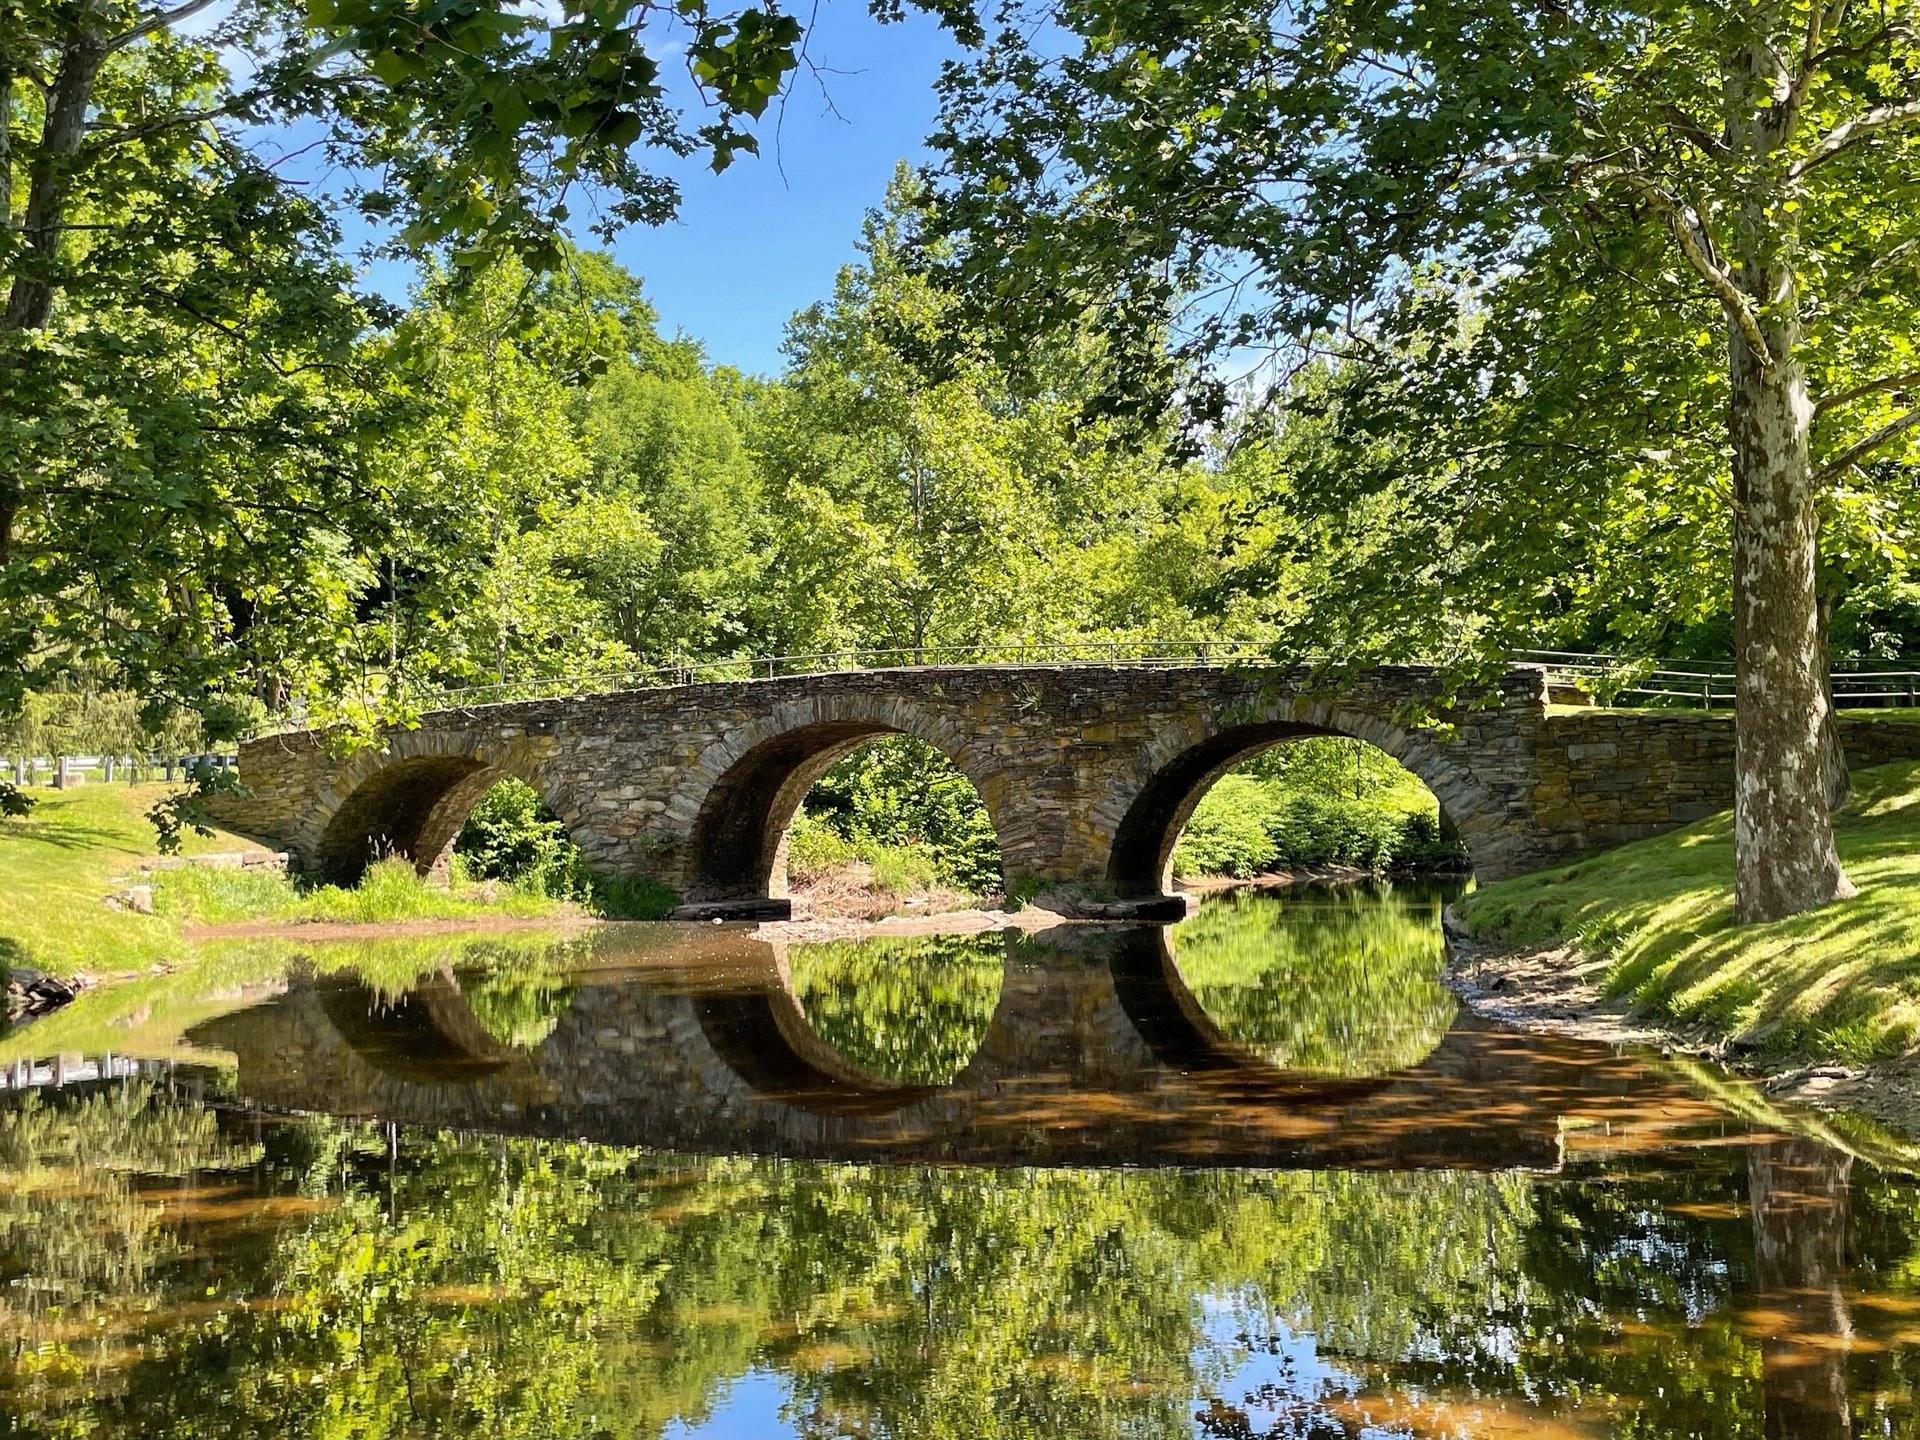 Eine steinerne Brücke spannt sich über einen Fluss. Die Ufer sind mit Gras und Bäumen bewachsen. Im Fluss spiegelt sich die Brücke.